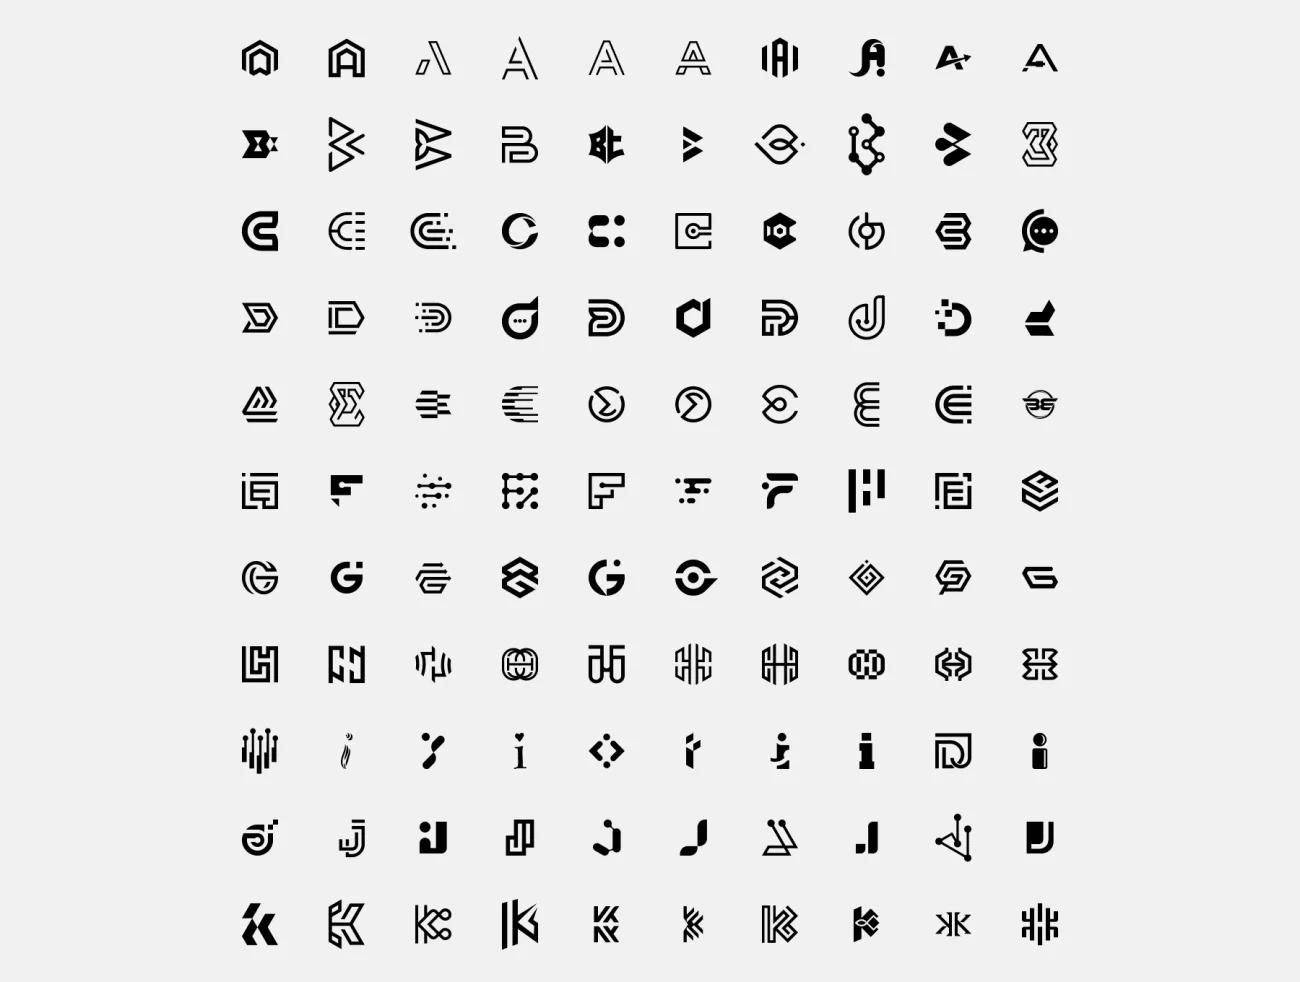 Logo设计资源包包含超过4000个字母抽象符号和700多种形状和纹理的矢量元素 Mega Logo Collection ai, figma格式-3D/图标、品牌VI、图案设计、平面广告、设计元素-到位啦UI